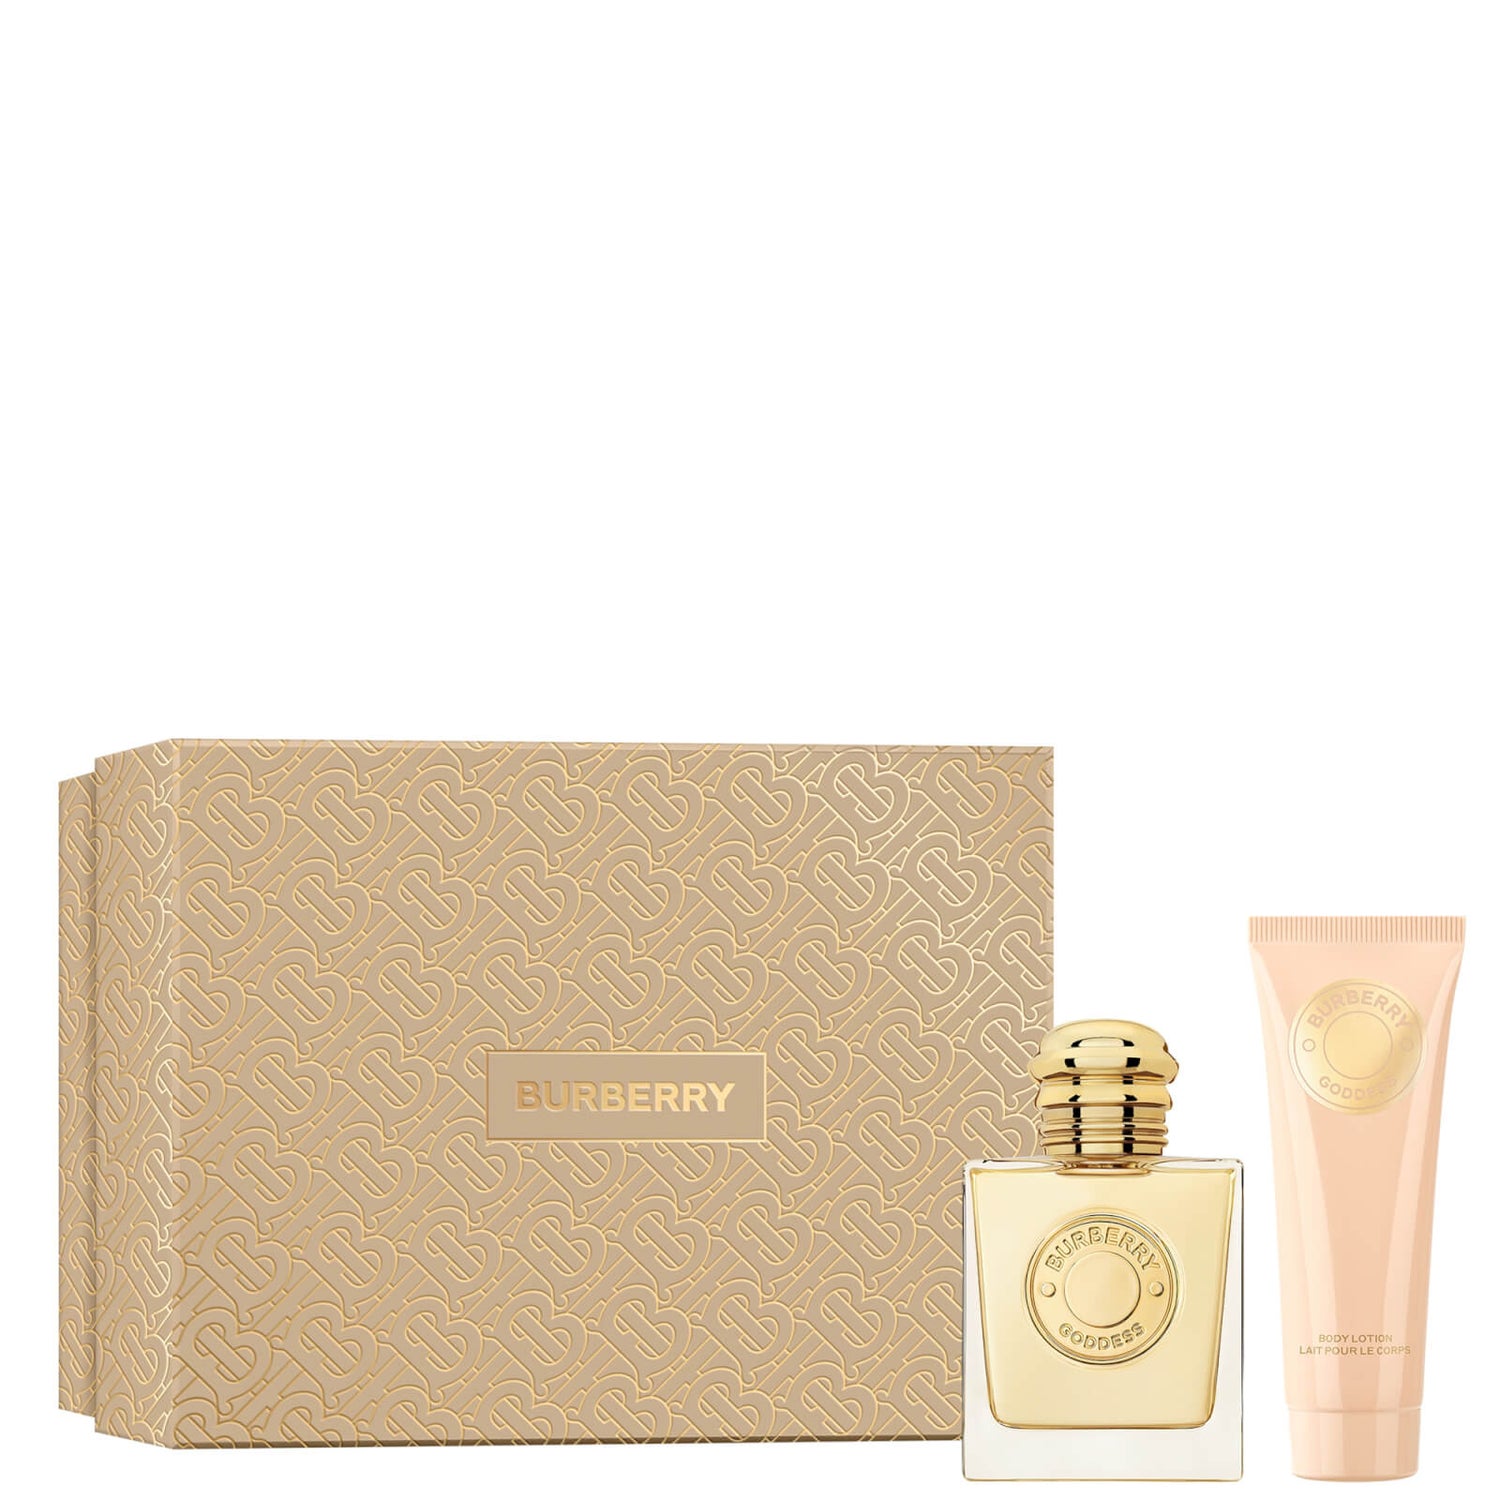 Burberry Goddess Eau de Parfum 50ml Gift Set